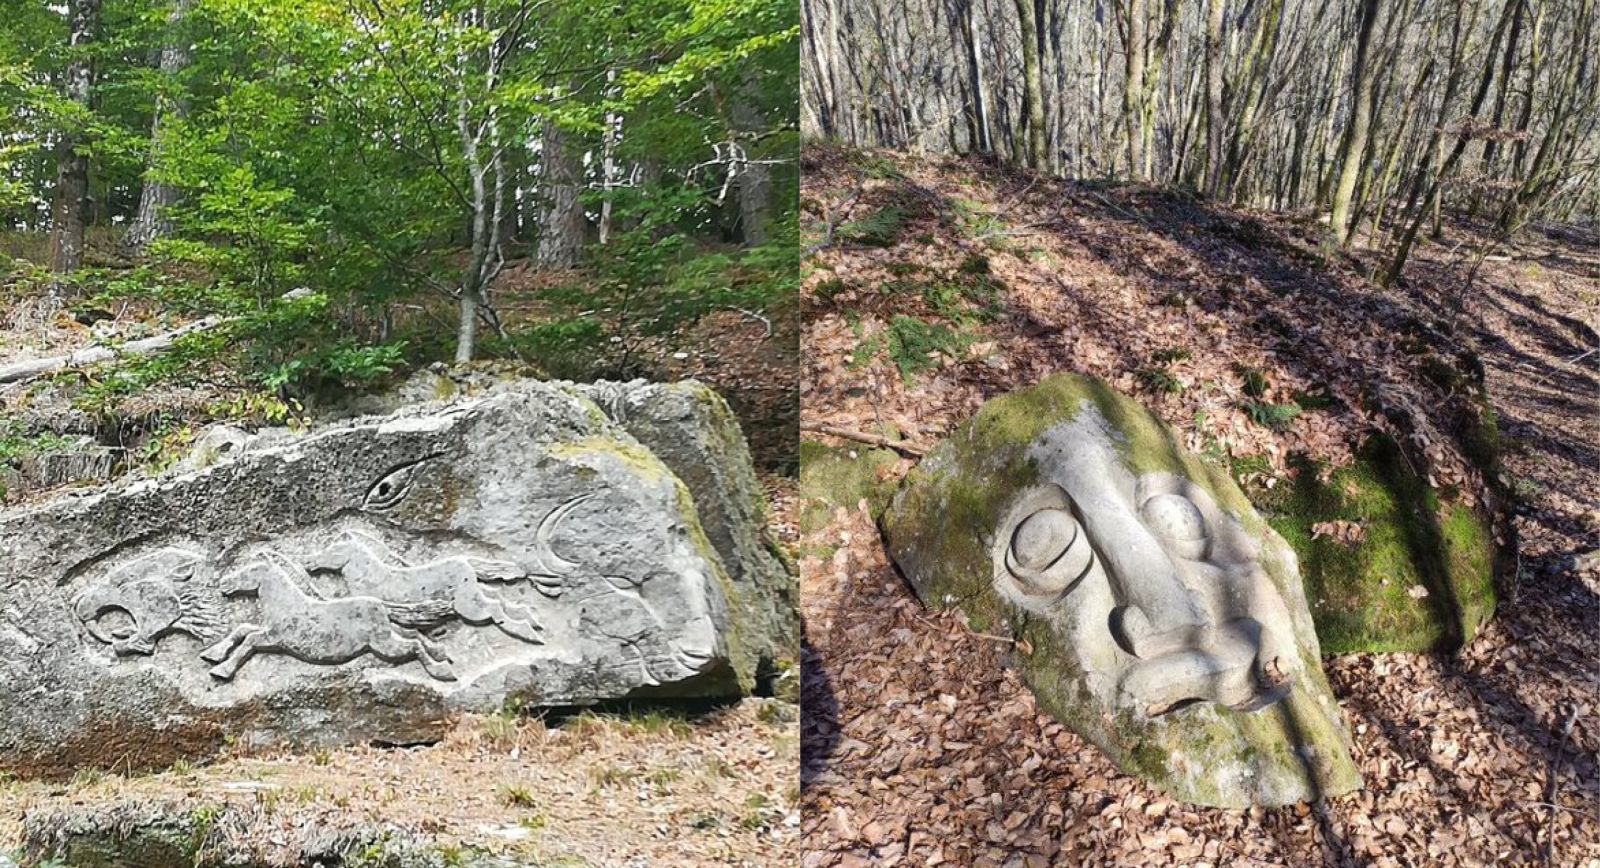 Pièces artistiques taillées dans la roche